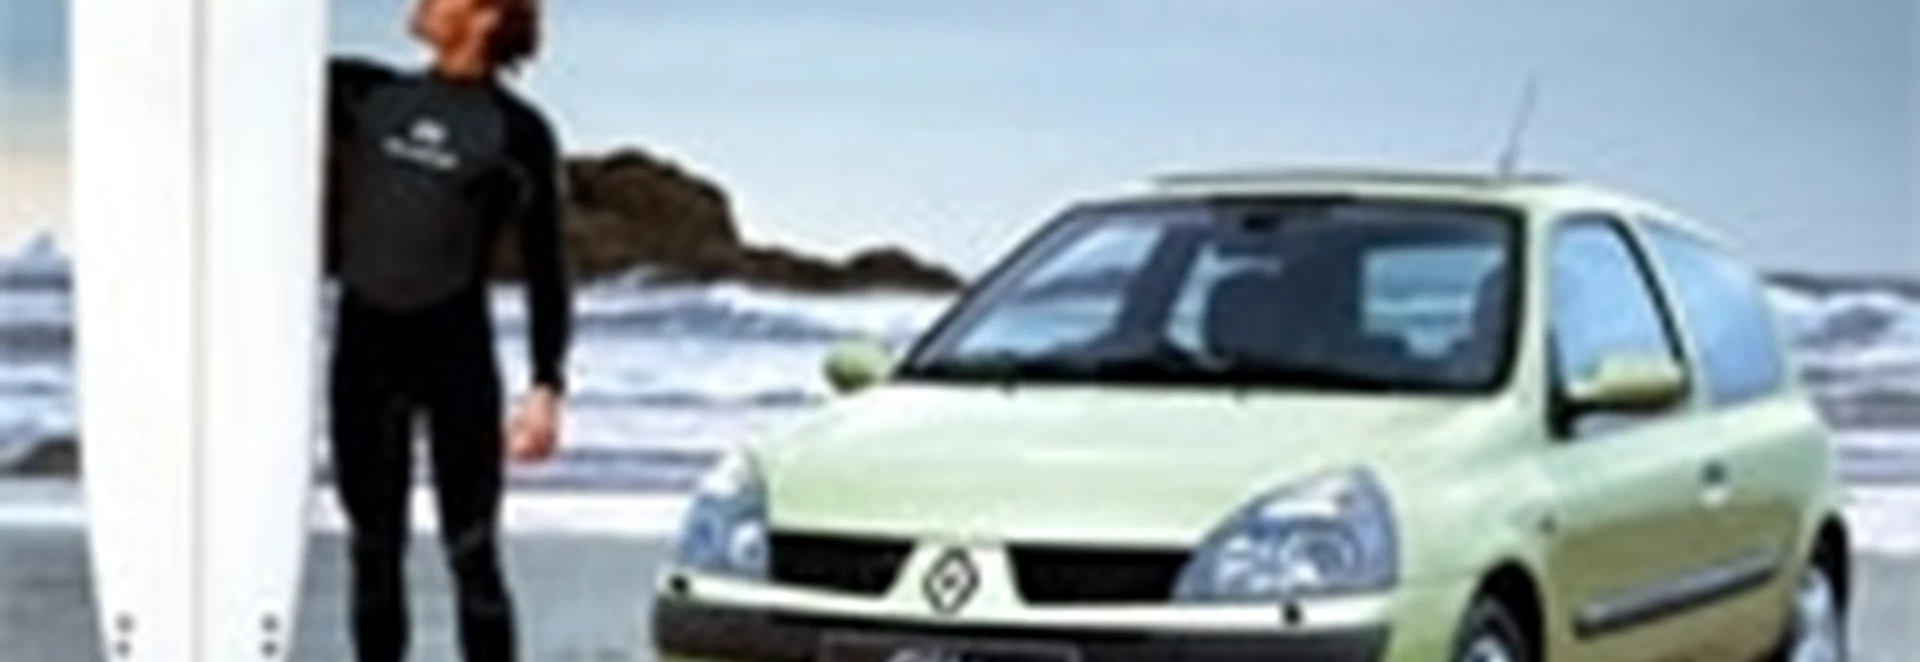 New 2003 Renault Clio range 